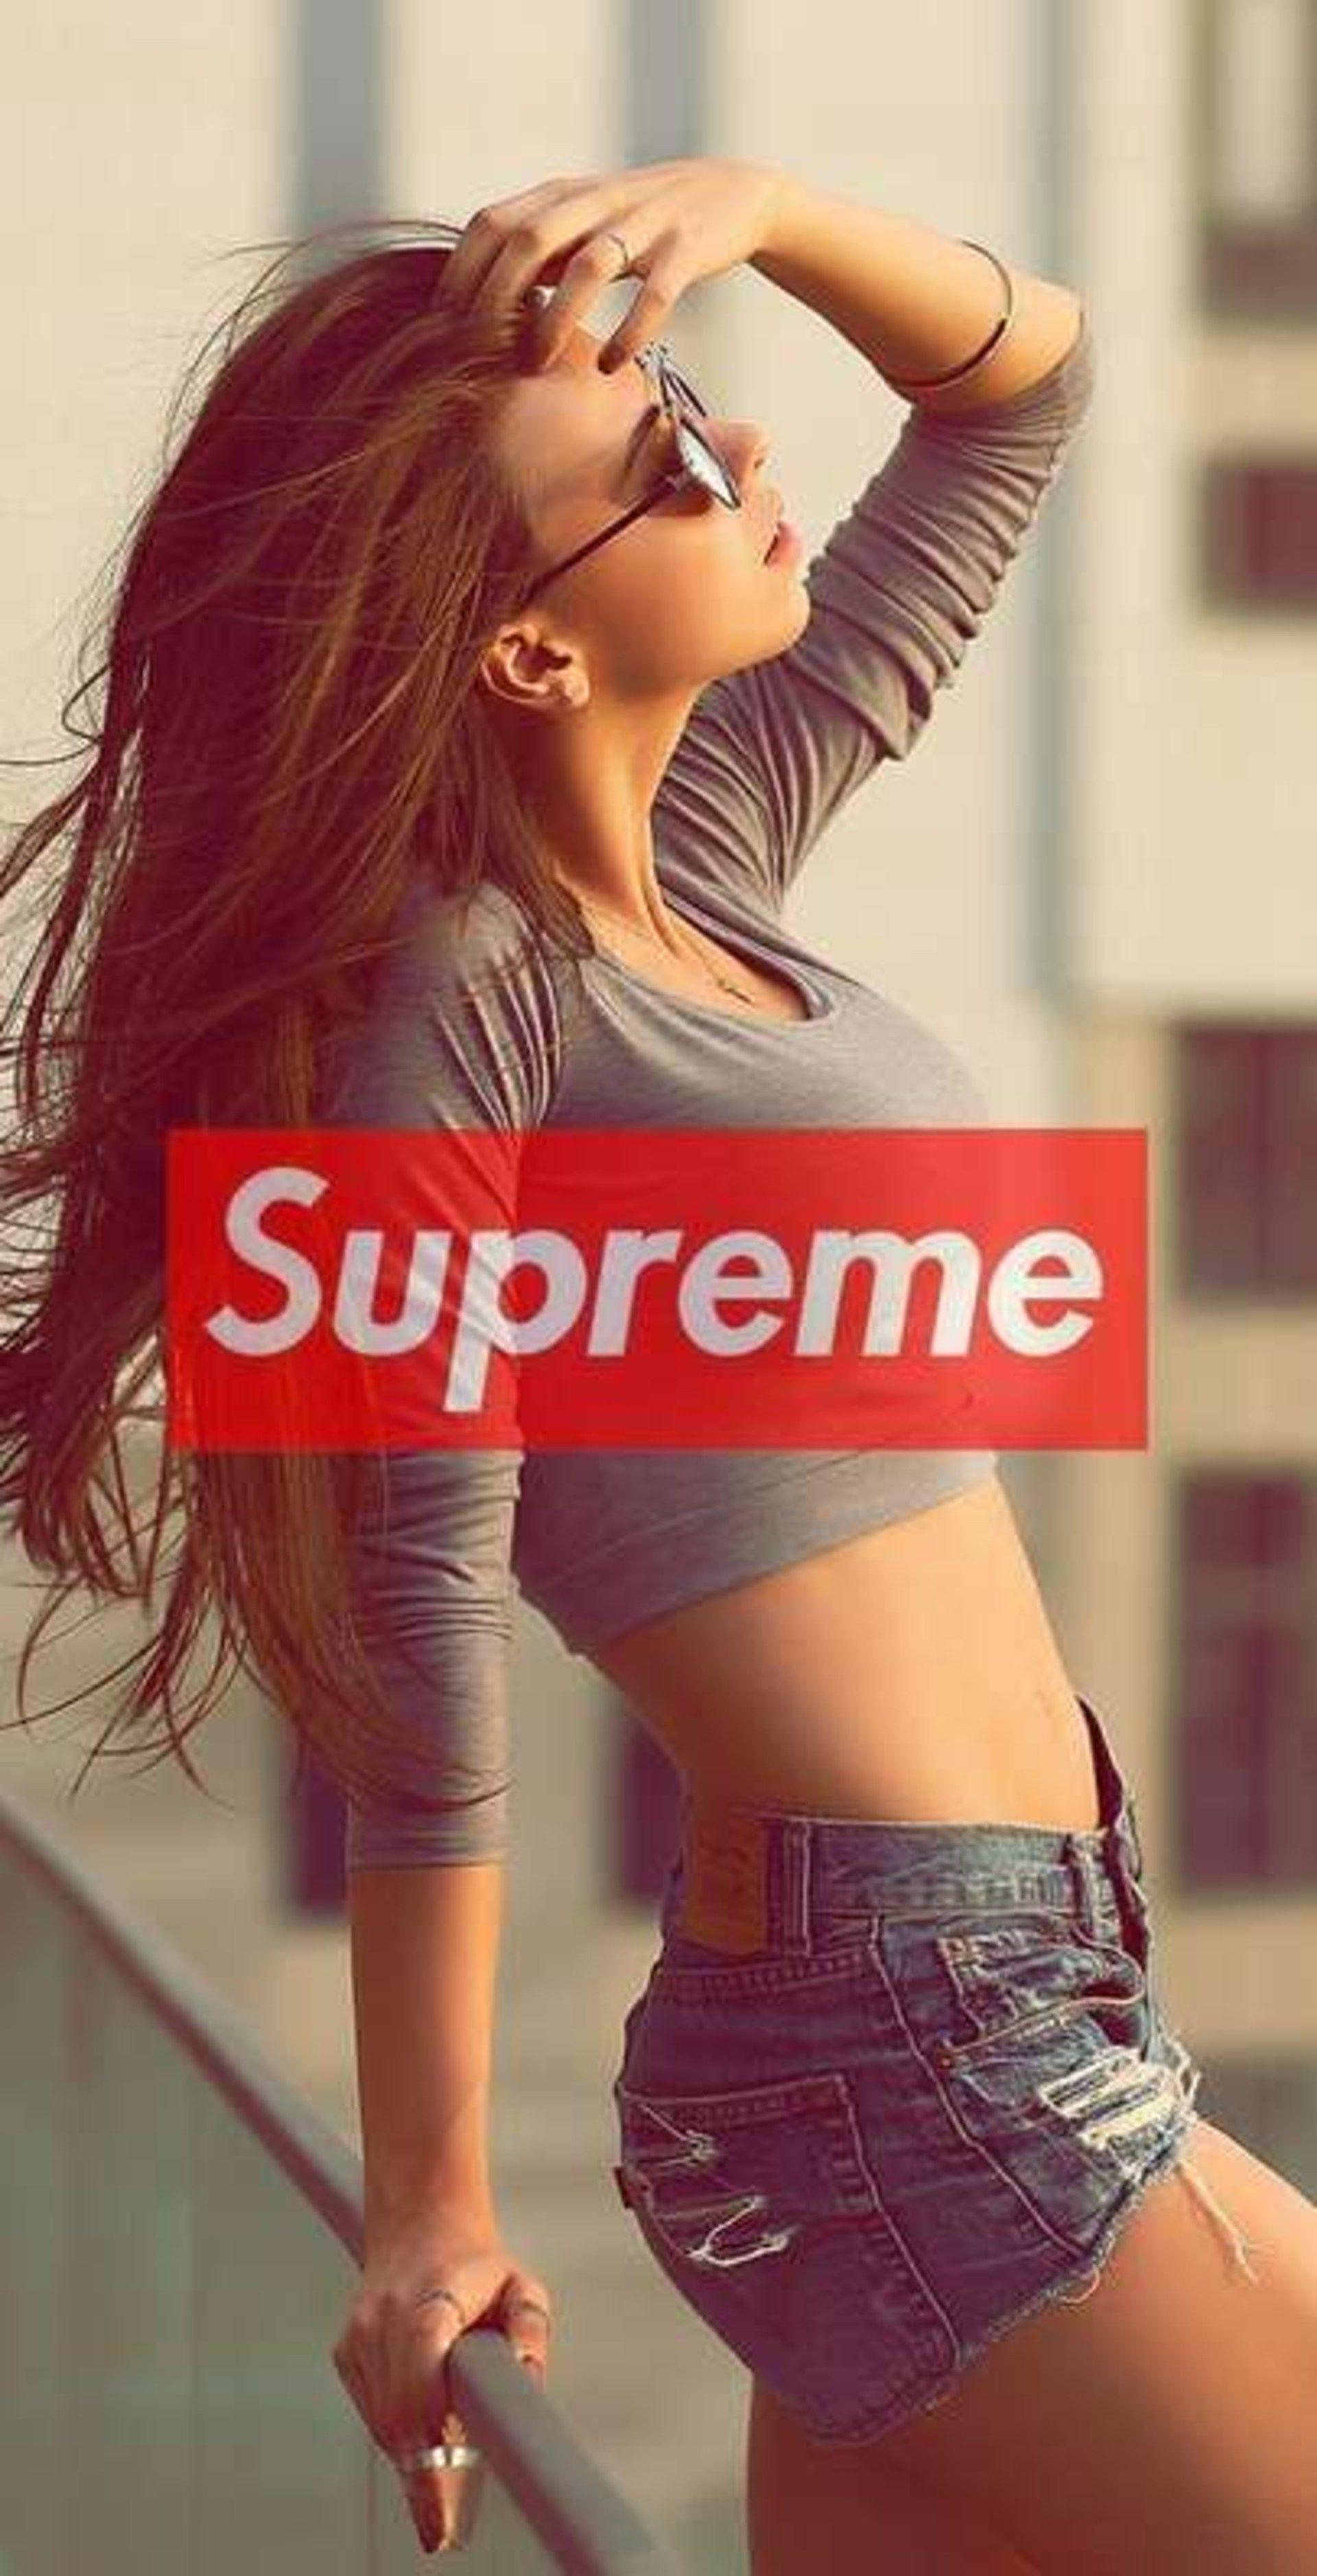 Supreme Girls iPhone Wallpaper Free Supreme Girls